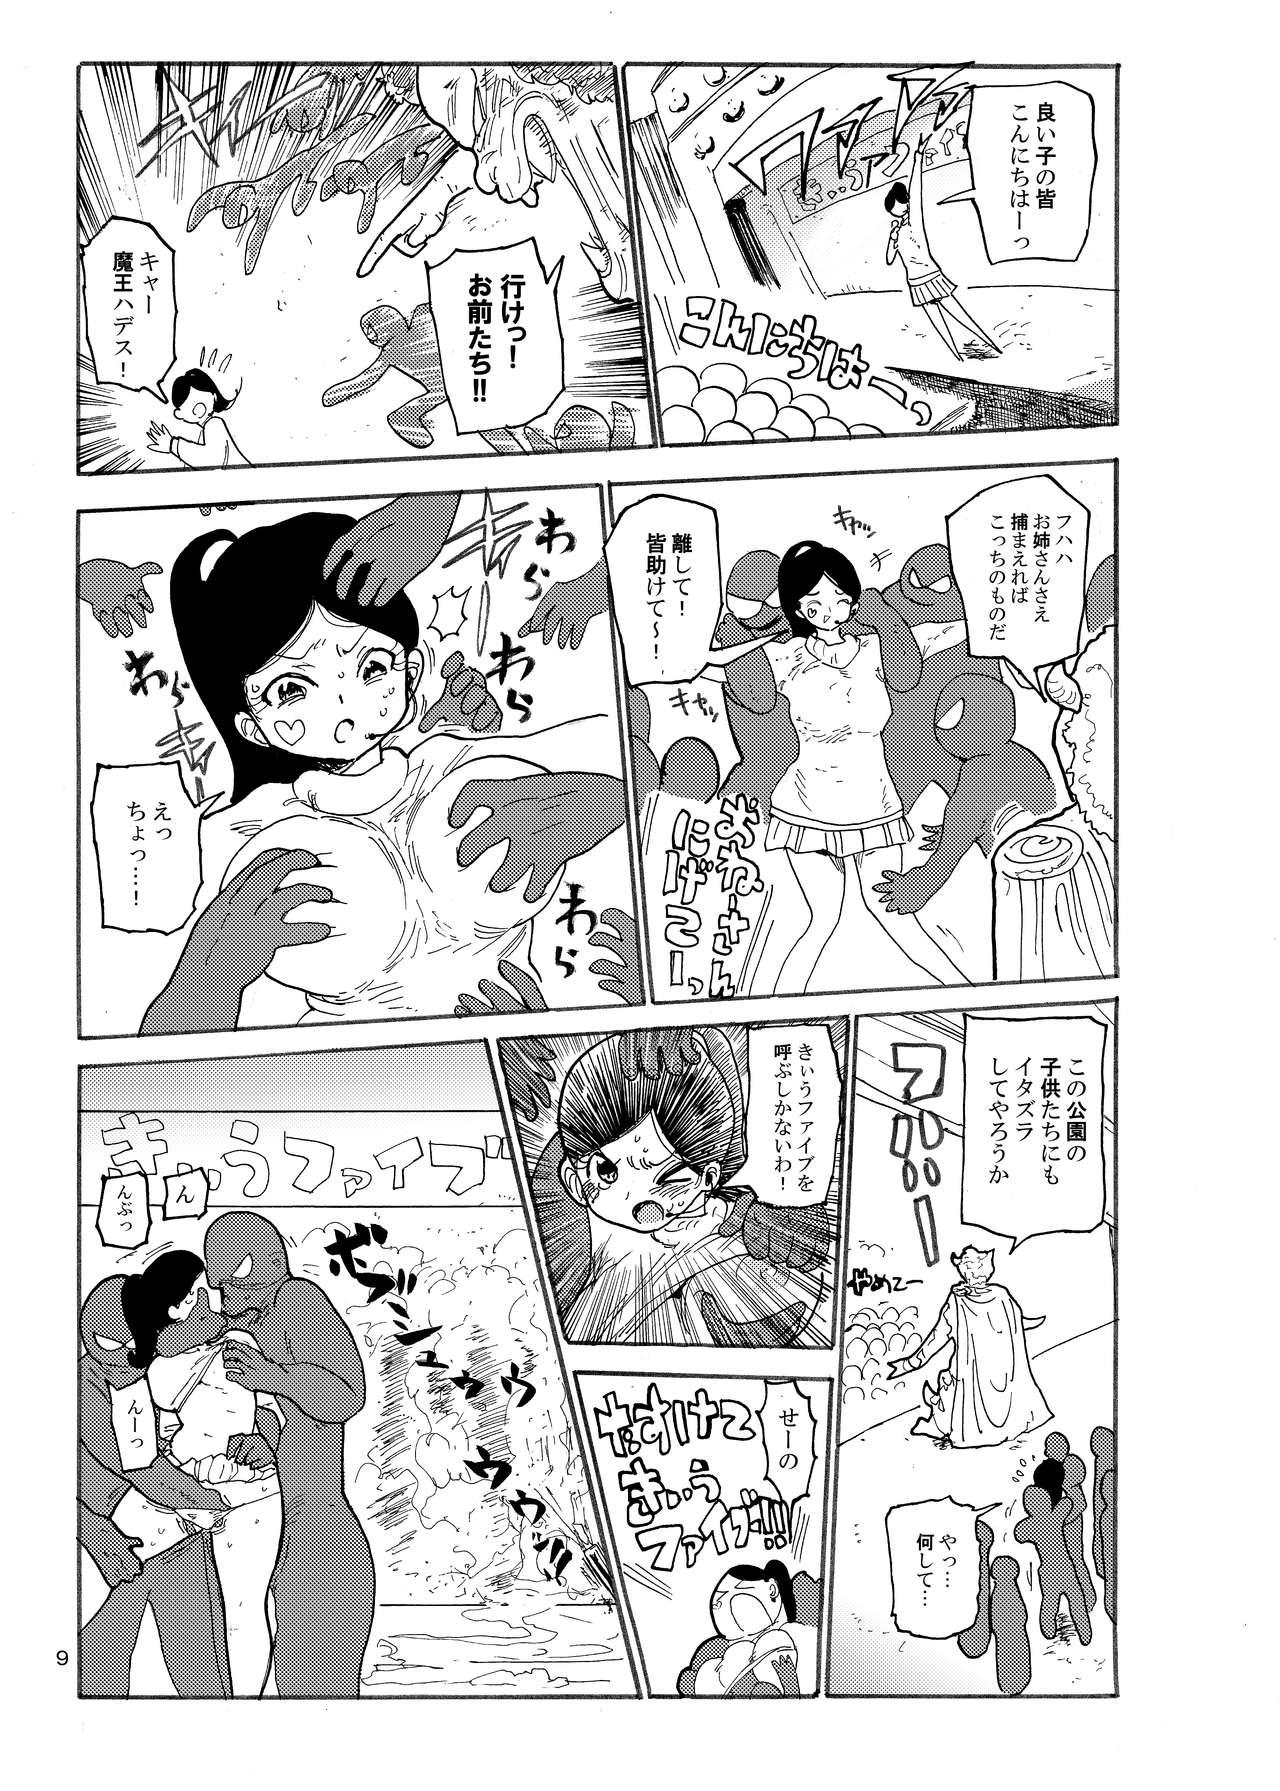 Mamada Fuyu ni mo Nandemo Chousa Shoujo no Doujinshi ga Deta? Wakarimashita Chousa Shimasu  - Page 8